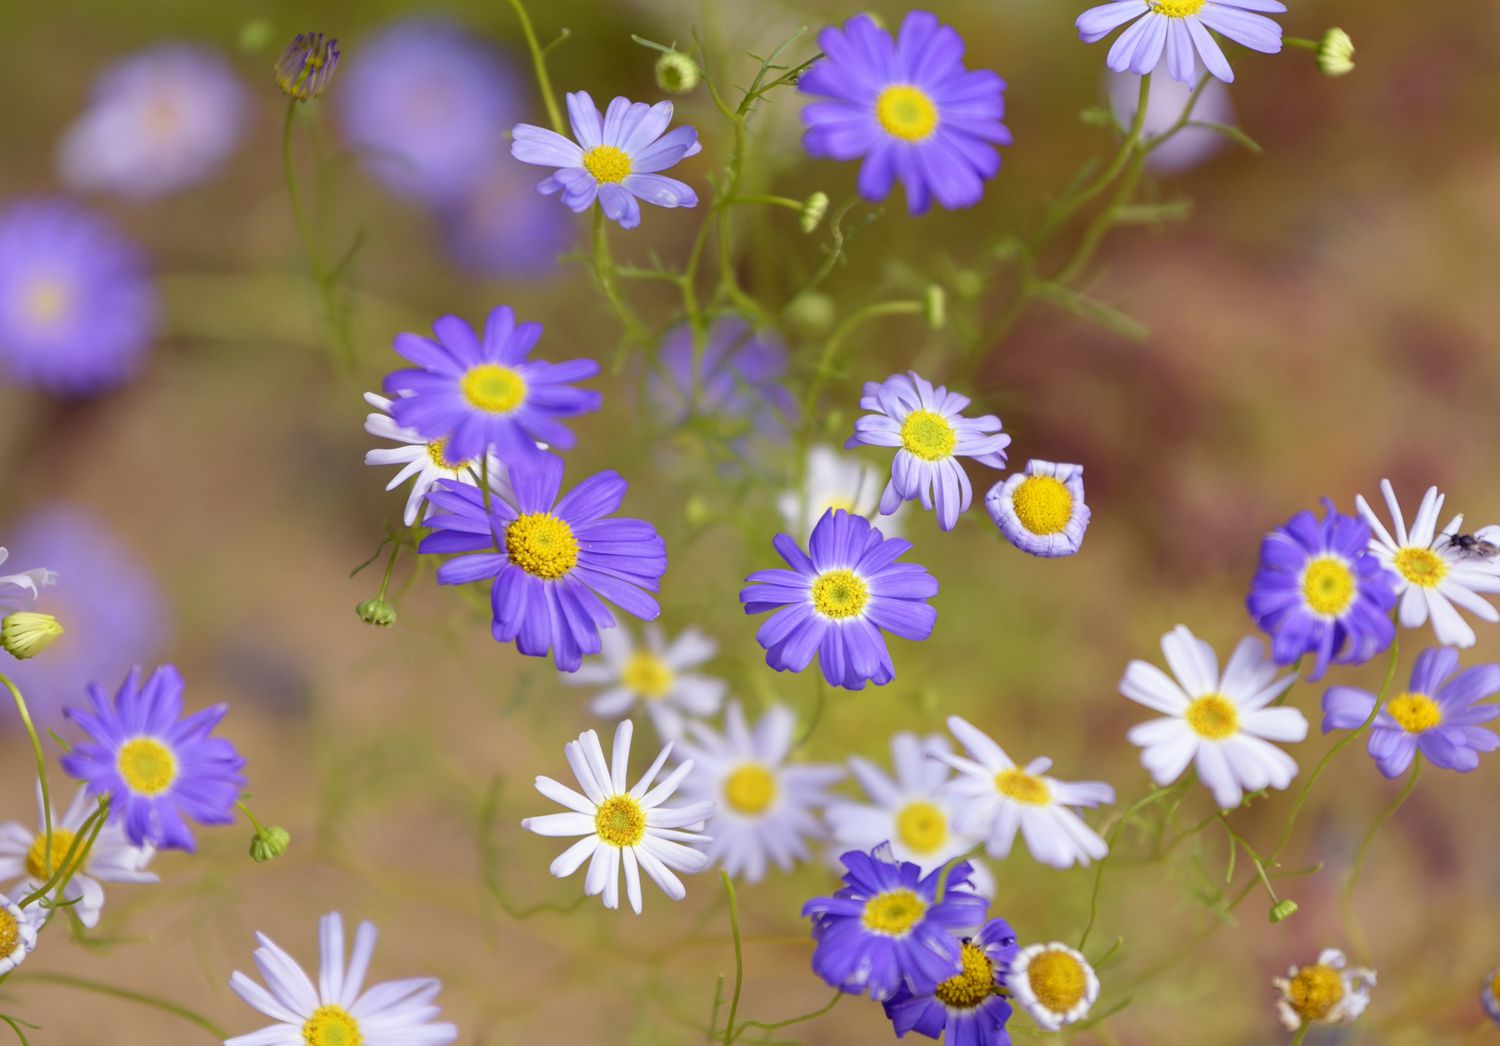 Schwanenblume mit kleinen violetten und weißen Blüten mit gelber Mitte auf dünnen Stielen